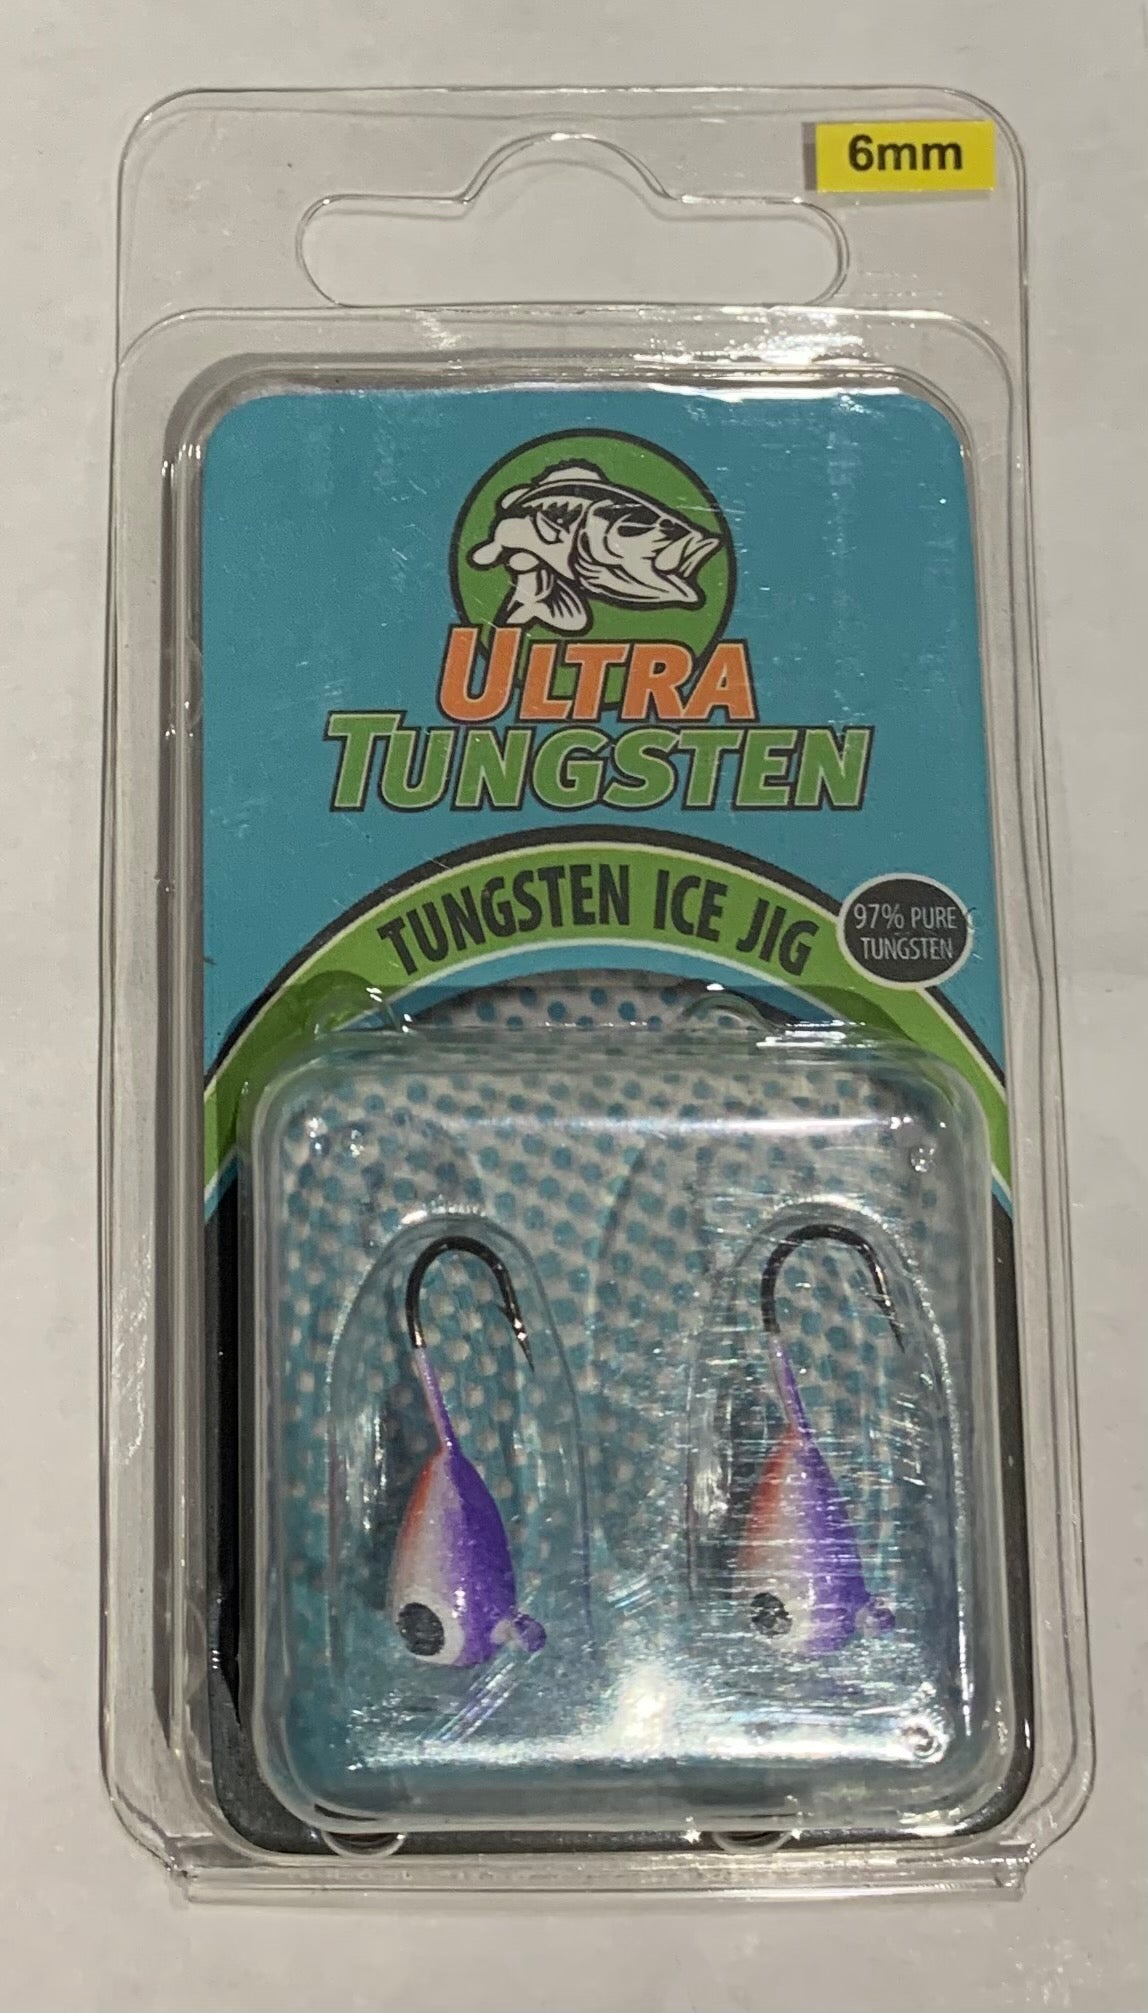 Ultra Tungsten Ice Jig